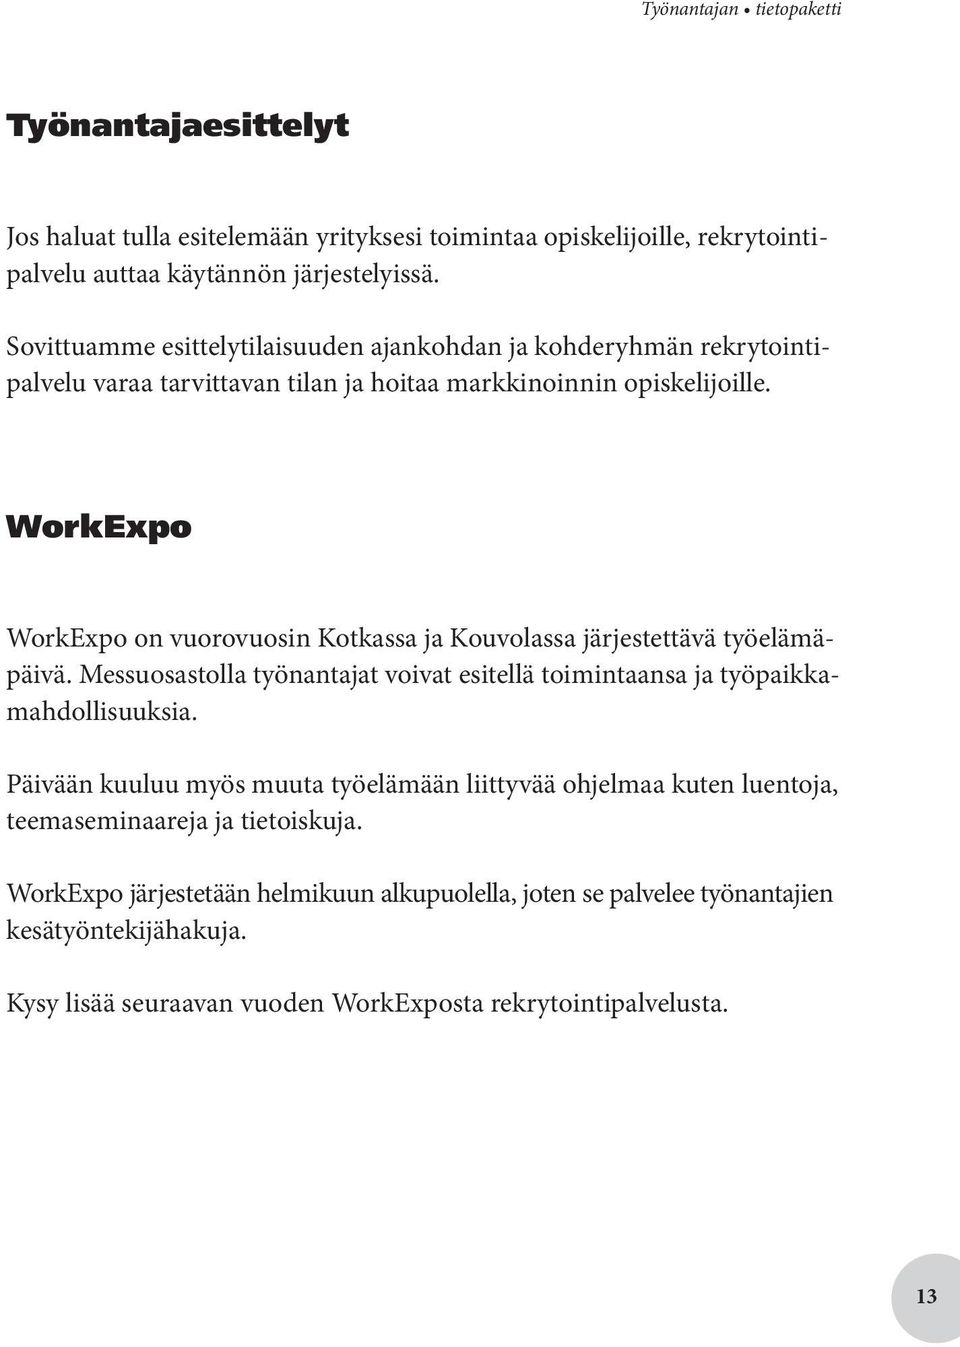 WorkExpo WorkExpo on vuorovuosin Kotkassa ja Kouvolassa järjestettävä työelämäpäivä. Messuosastolla työnantajat voivat esitellä toimintaansa ja työpaikkamahdollisuuksia.